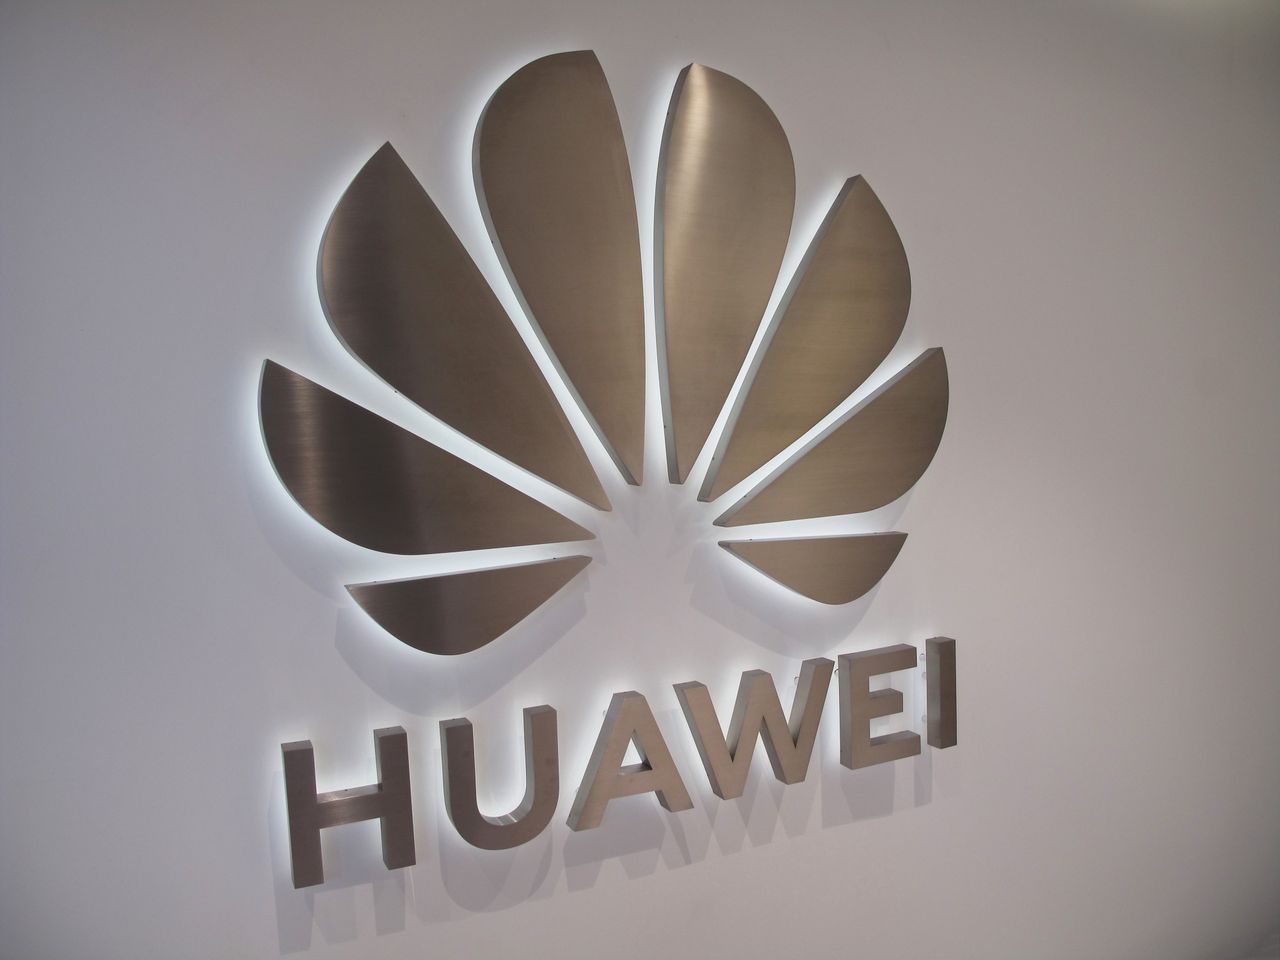 Pod rządami Trumpa Huawei znalazło się na czarnej liście